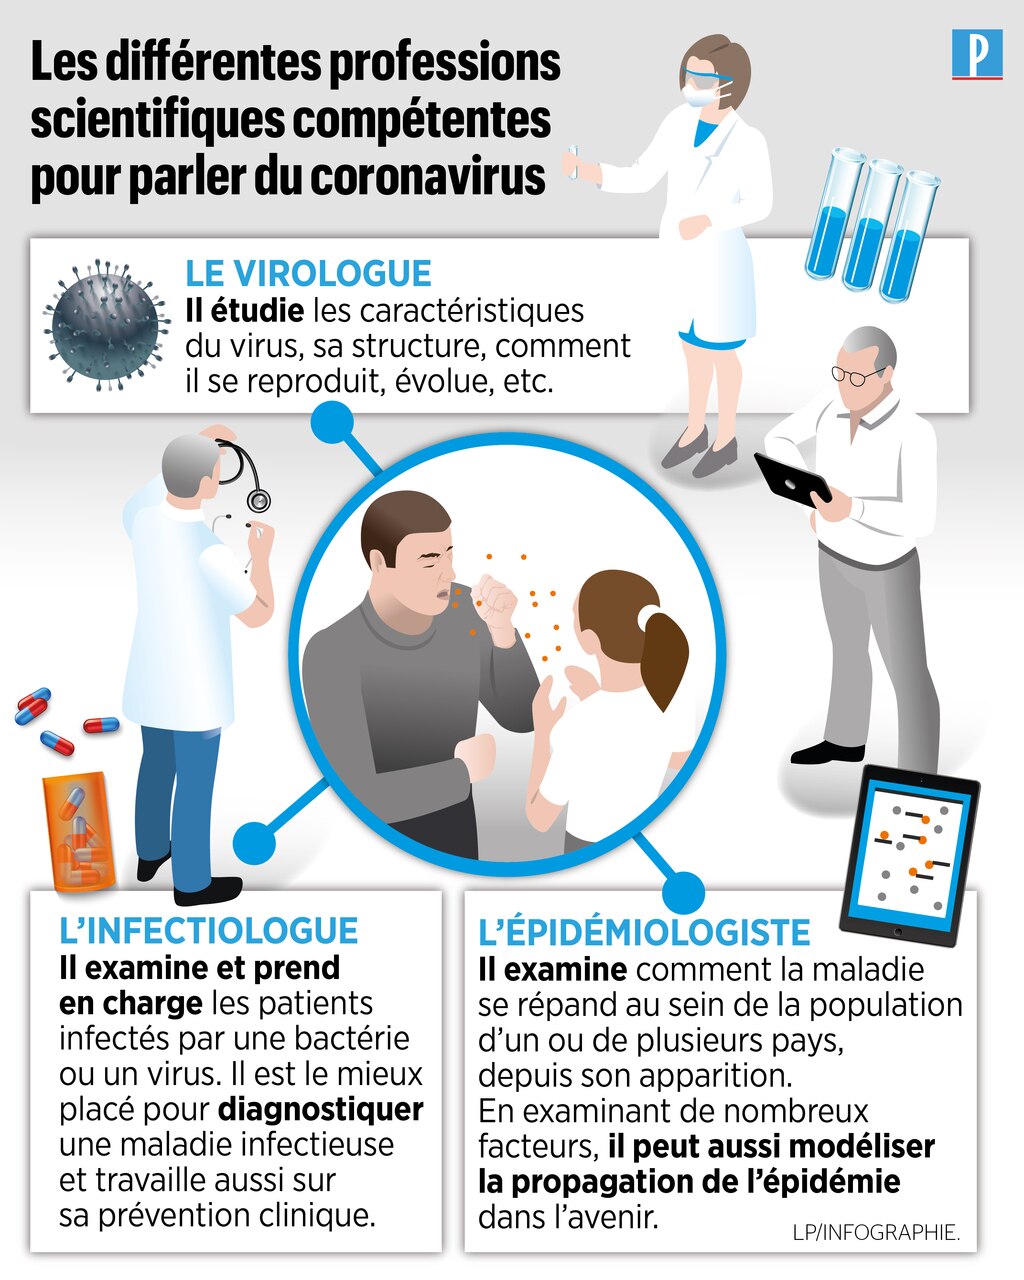 coronavirus epidemiologiste infectiologue virologue tous experts mais de quoi le parisien